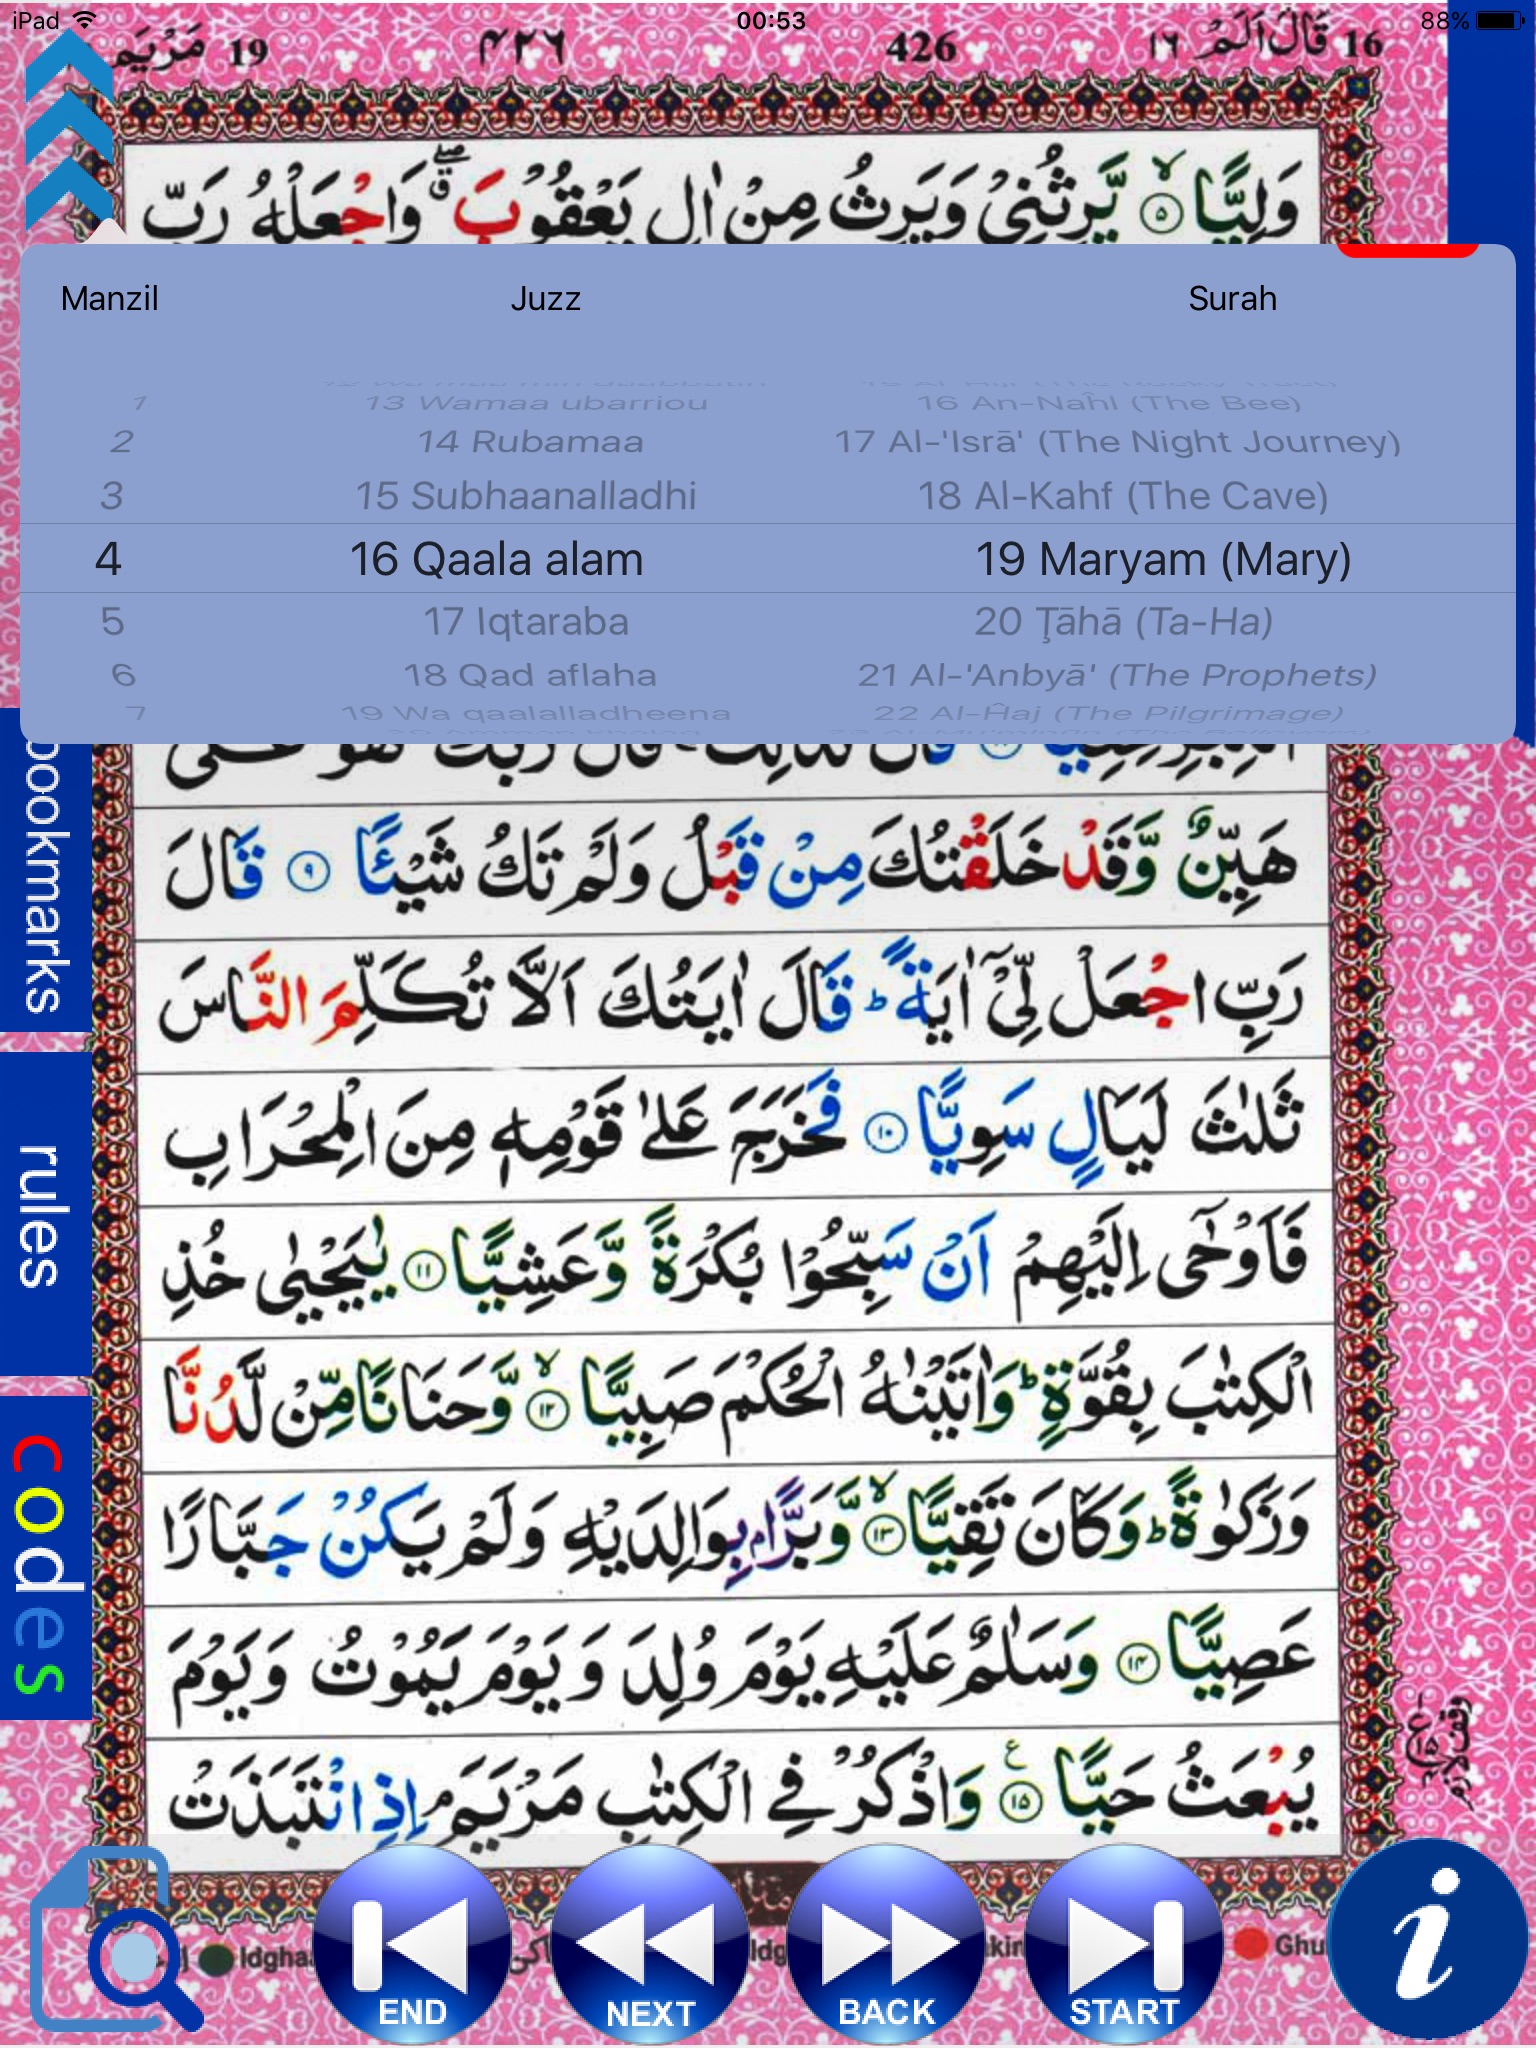 iTajweed Quran for iPad screenshot 4